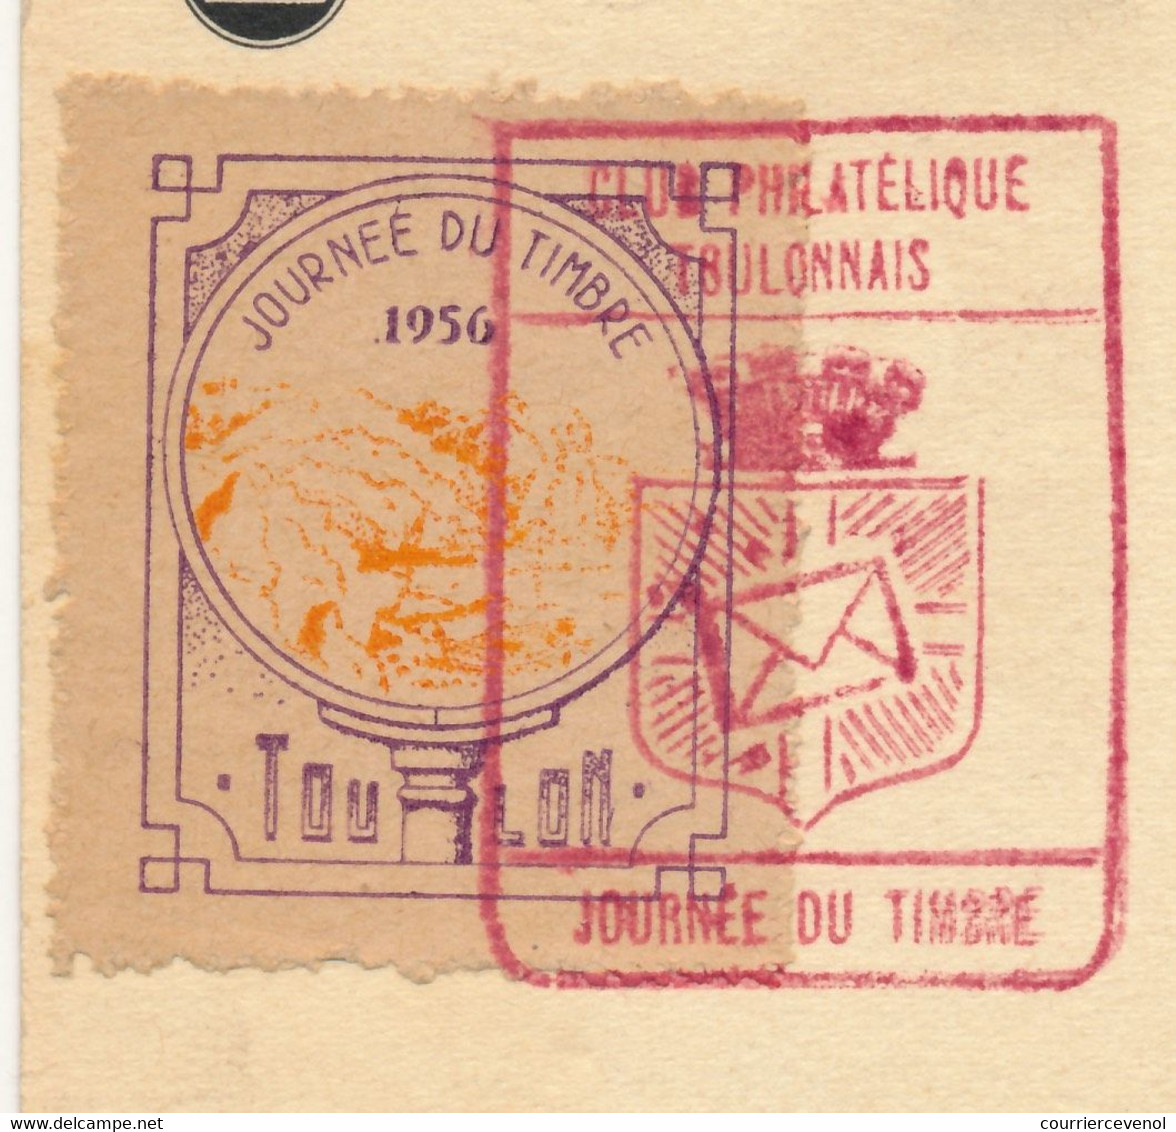 FRANCE => Vignette "Journée Du Timbre 1956 TOULON" Sur Carte Fédérale 12F + 3F François De Tassis - Toulon 1956 - Exposiciones Filatelicas